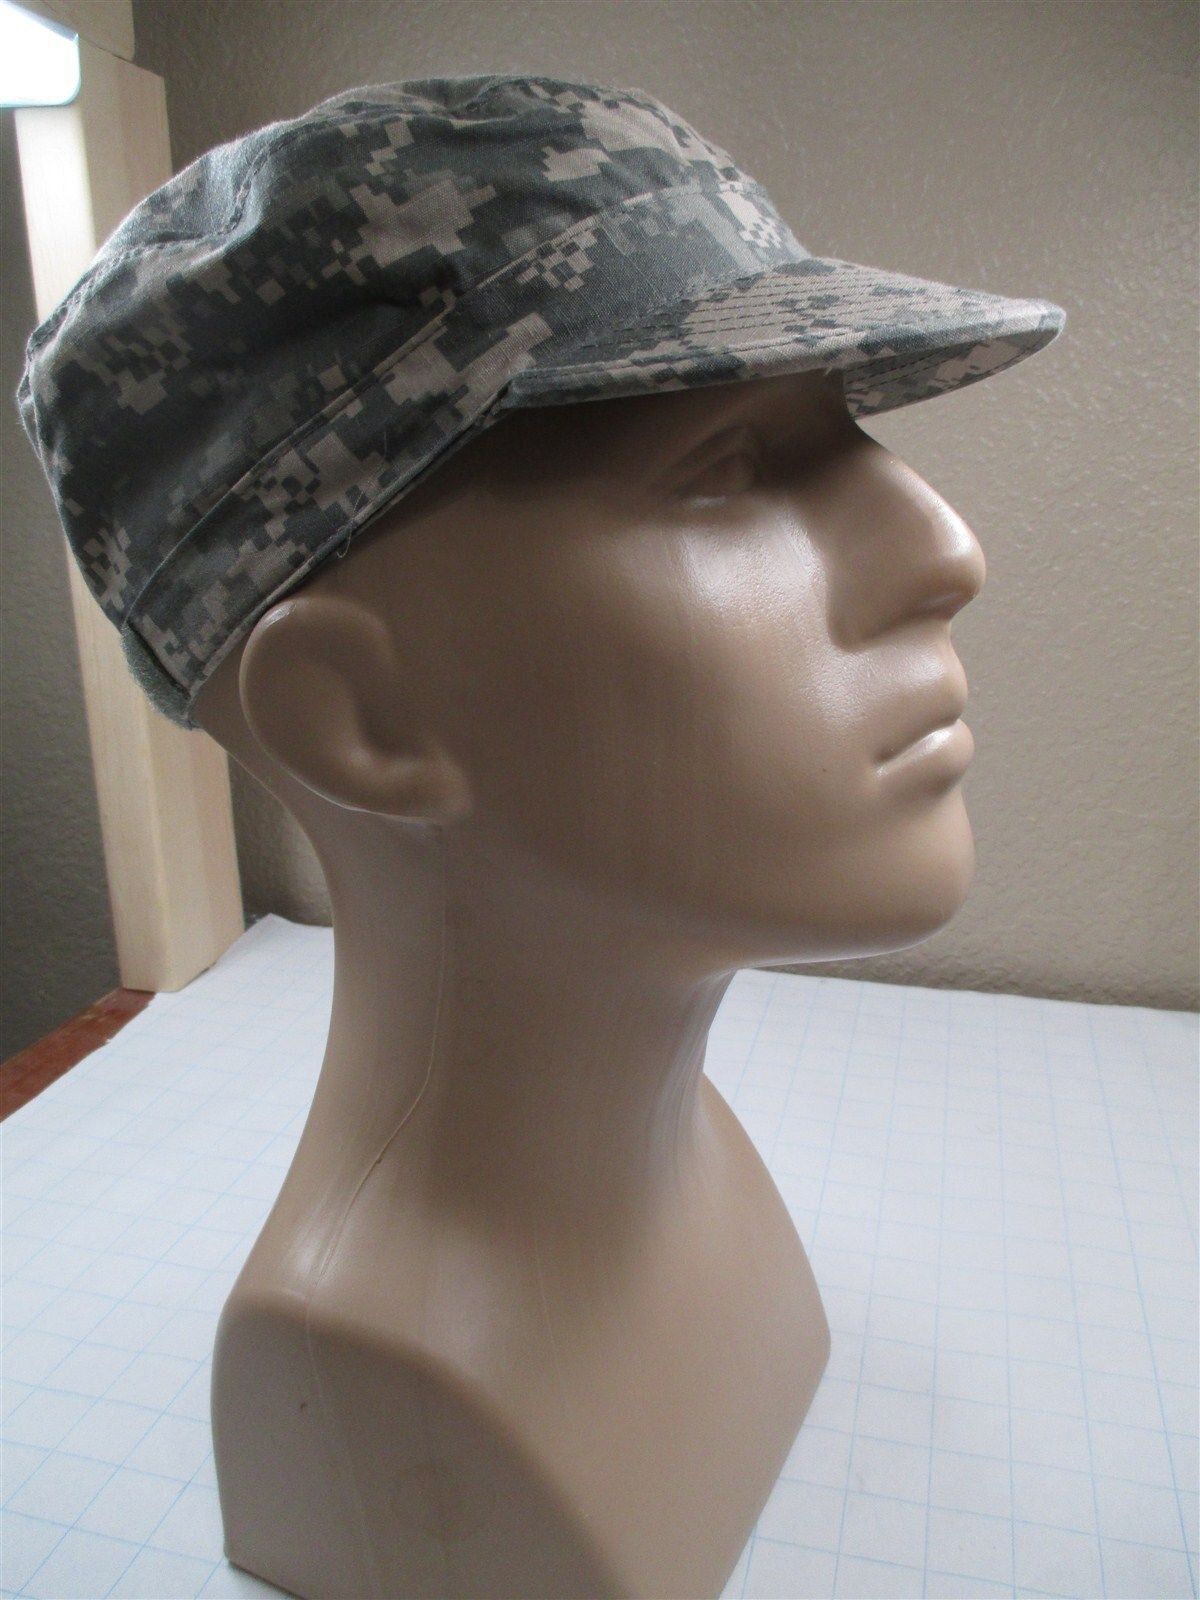 USGI Patrol Cap/Hat Size 7 3/8 ACU Digital Camo Army NSN: 8415-01-519-9119